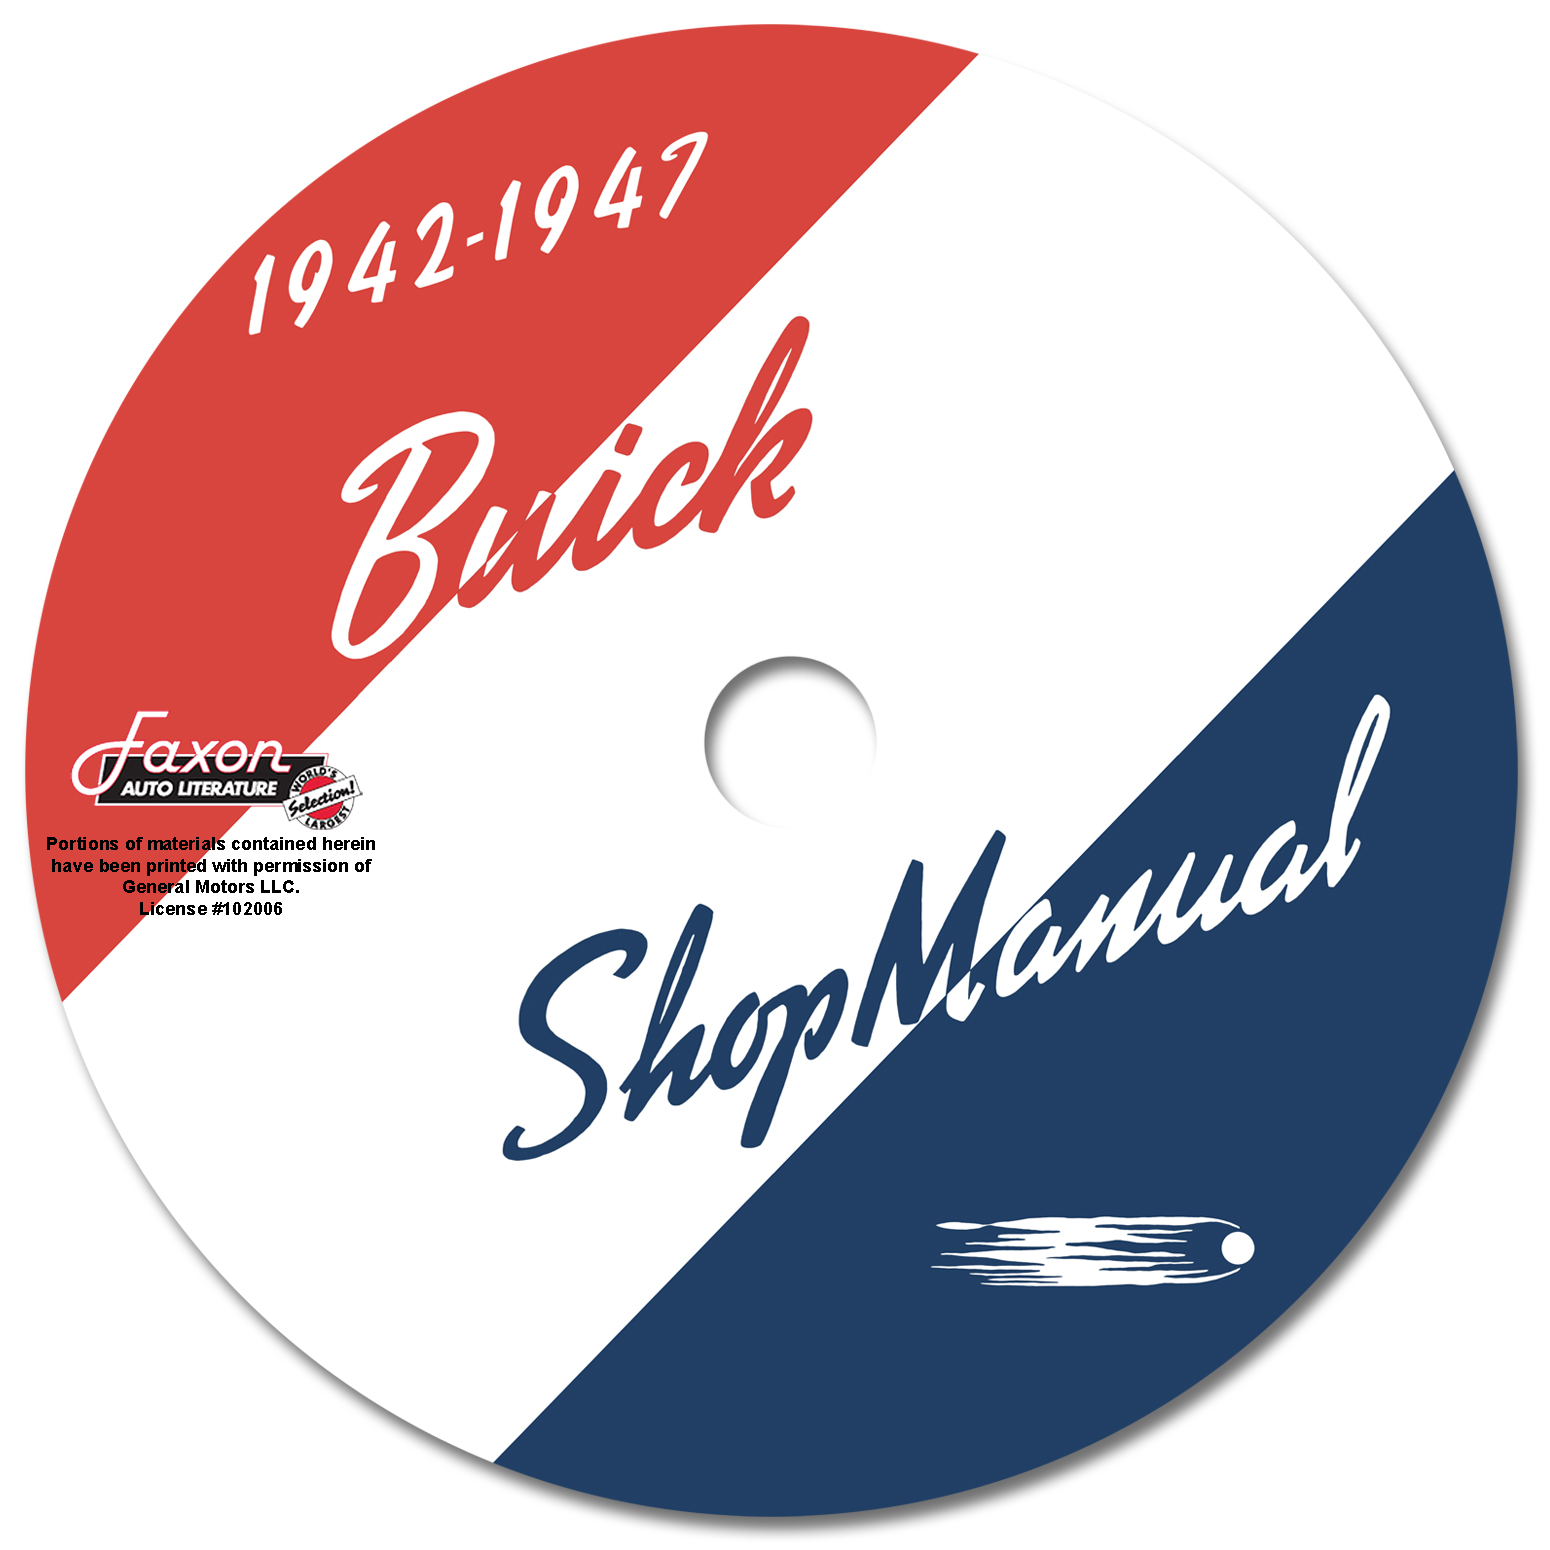 1942-1947 Buick CD-ROM Repair Manual for all models 